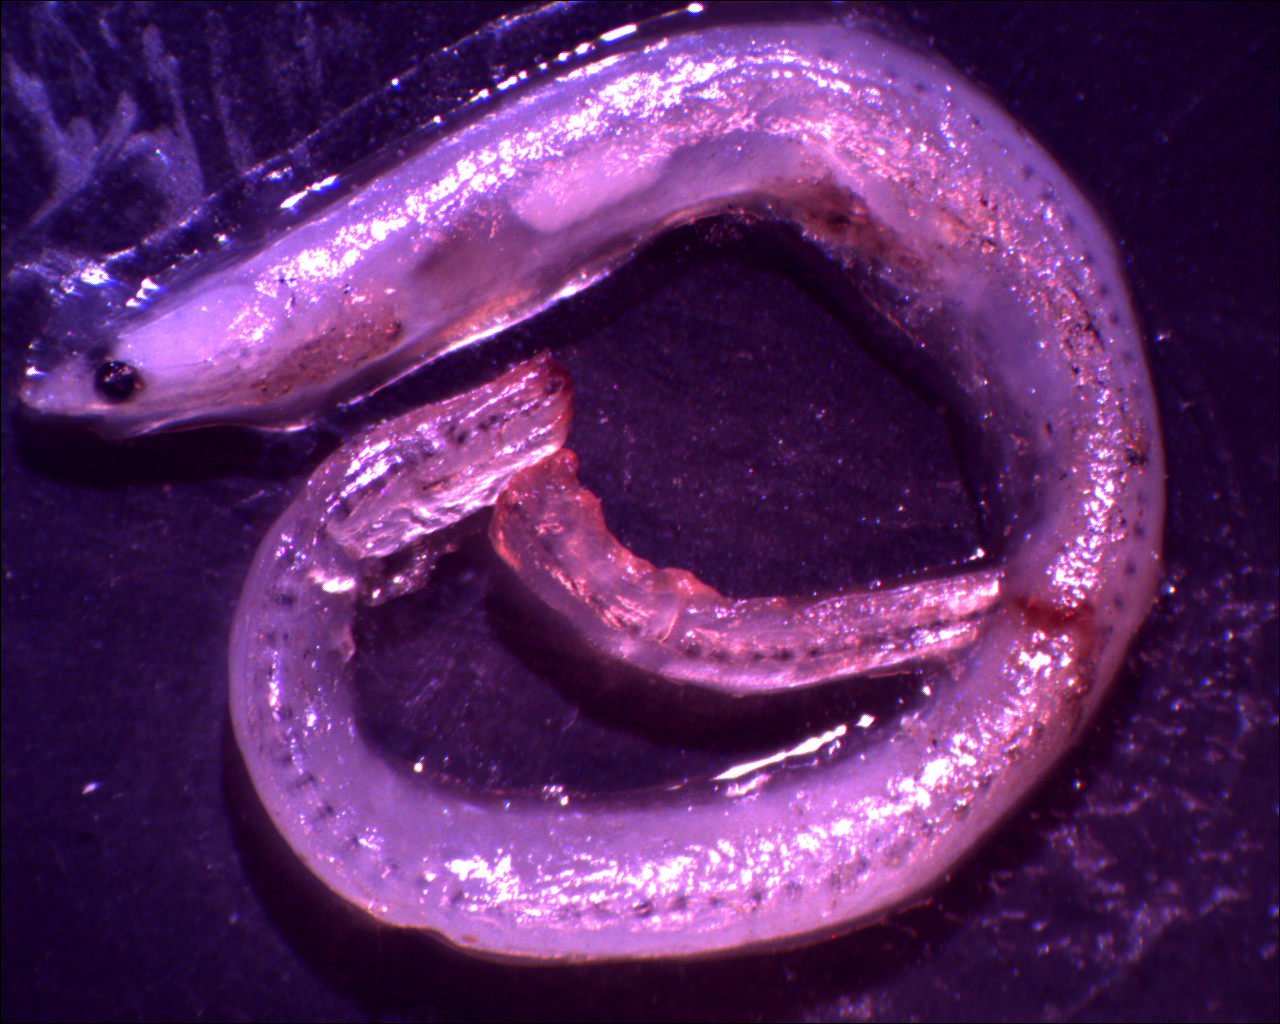 glass eel of Japanese eel